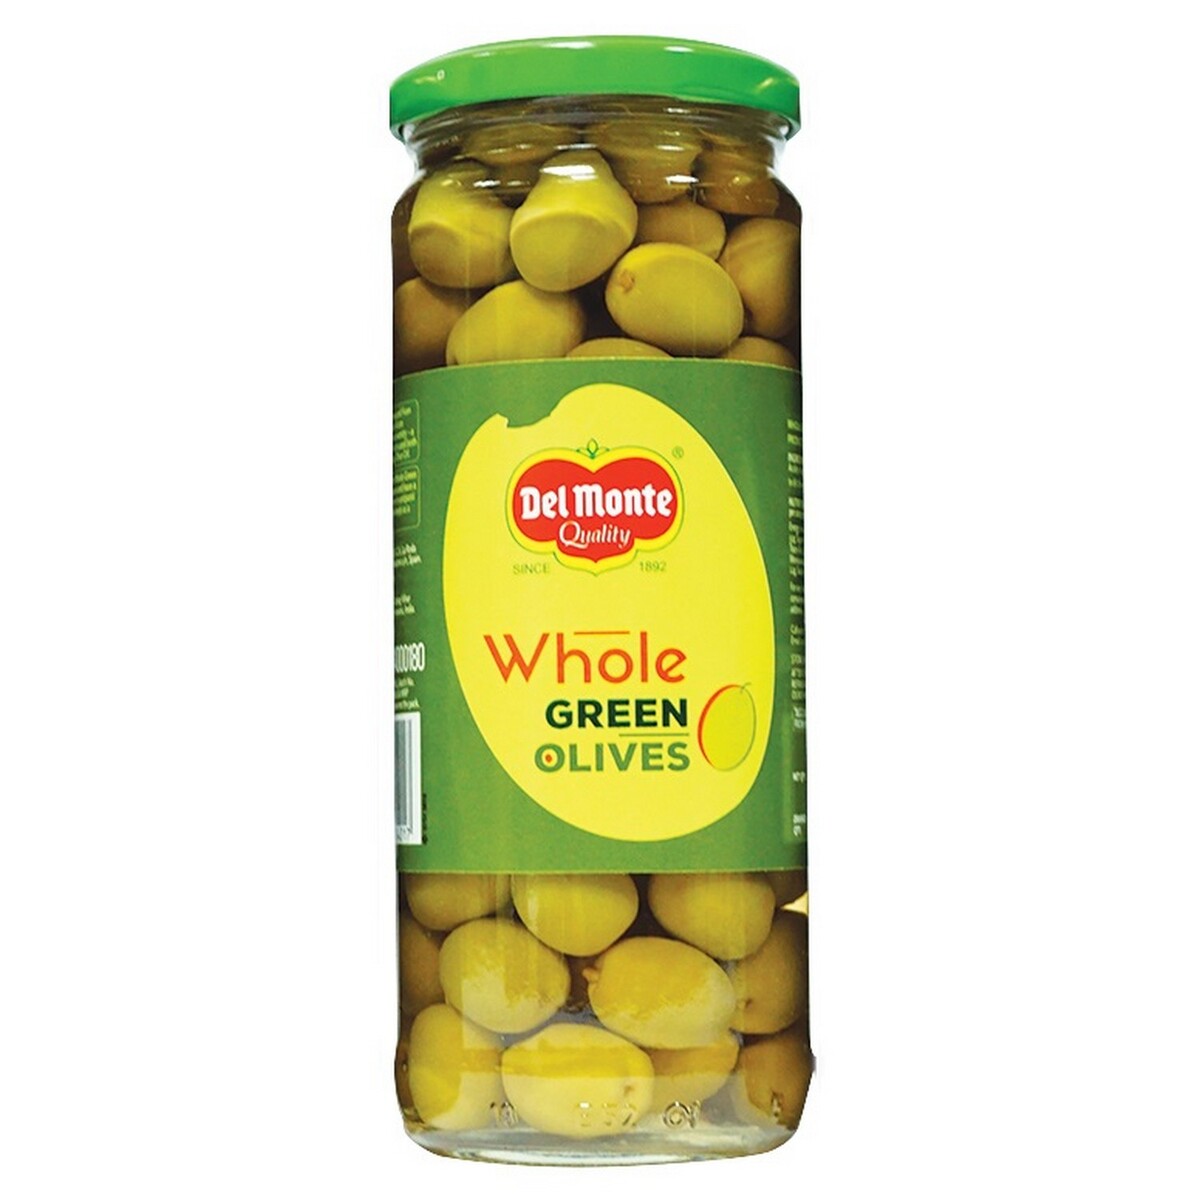 Delmonte Green Olive Whole 450g